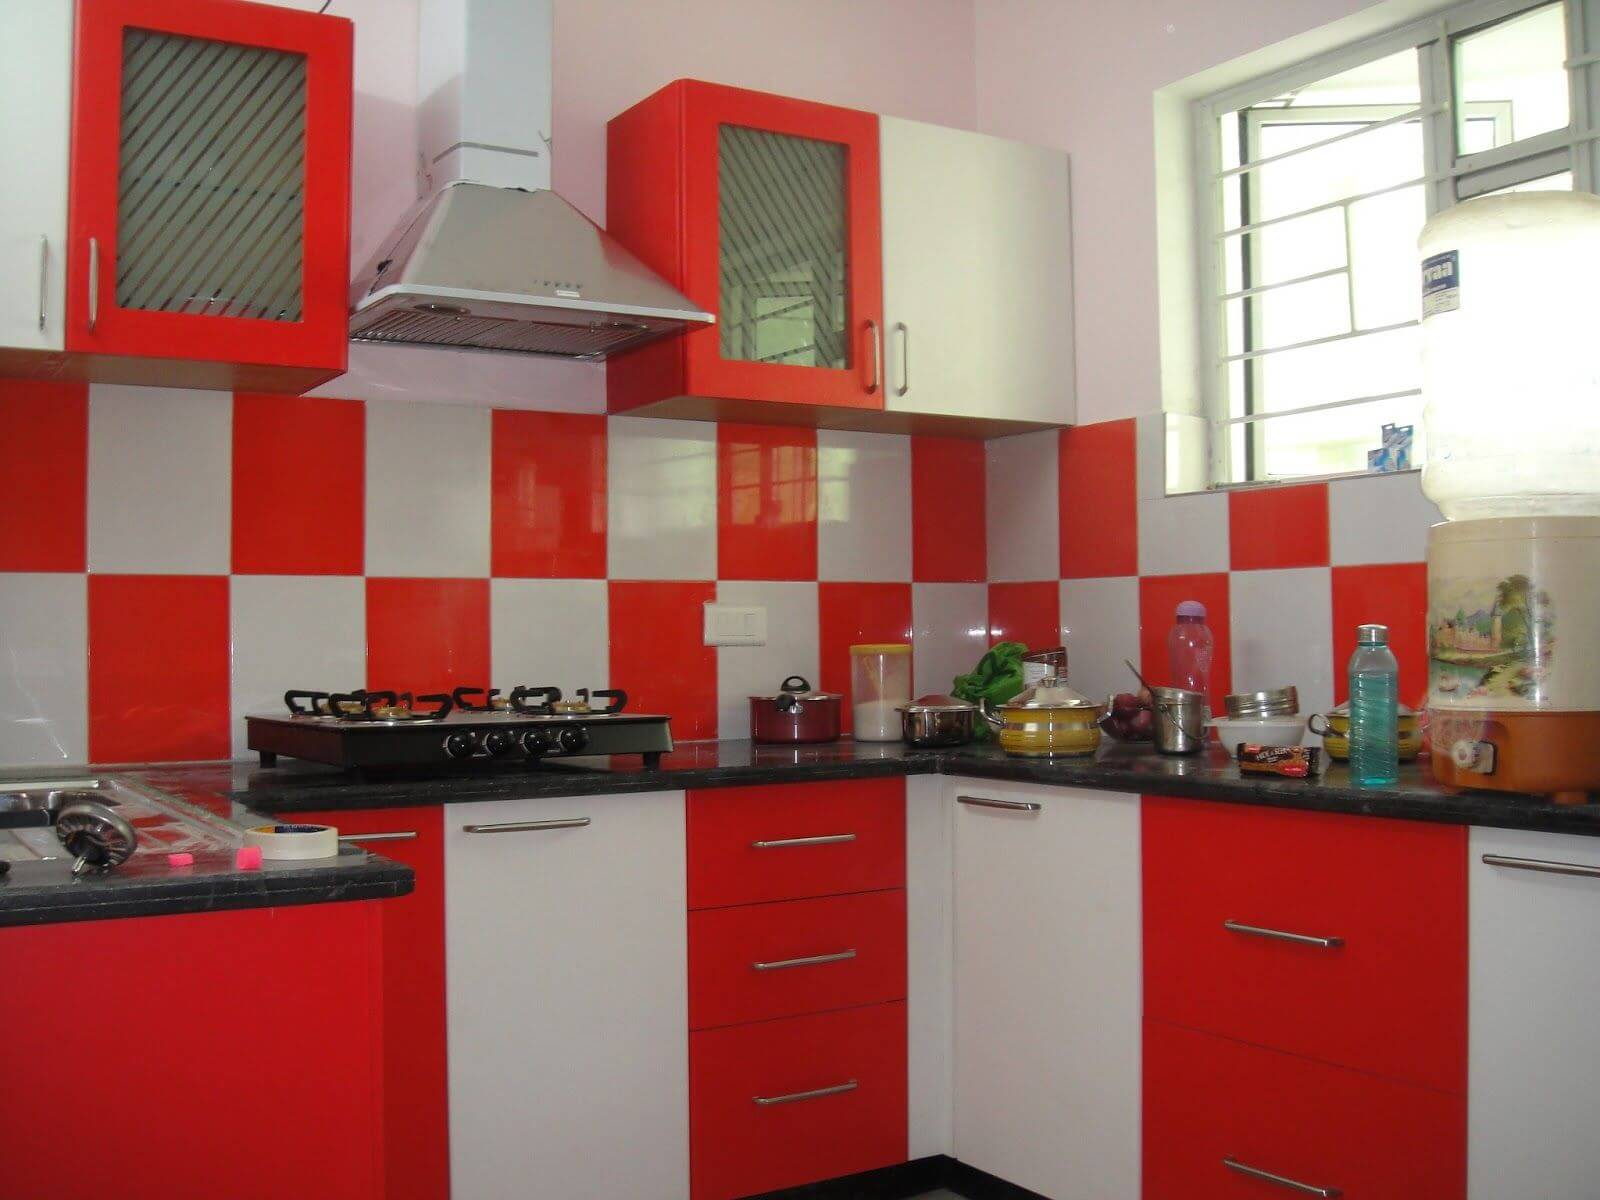 Röd och vit köksskåpfärg